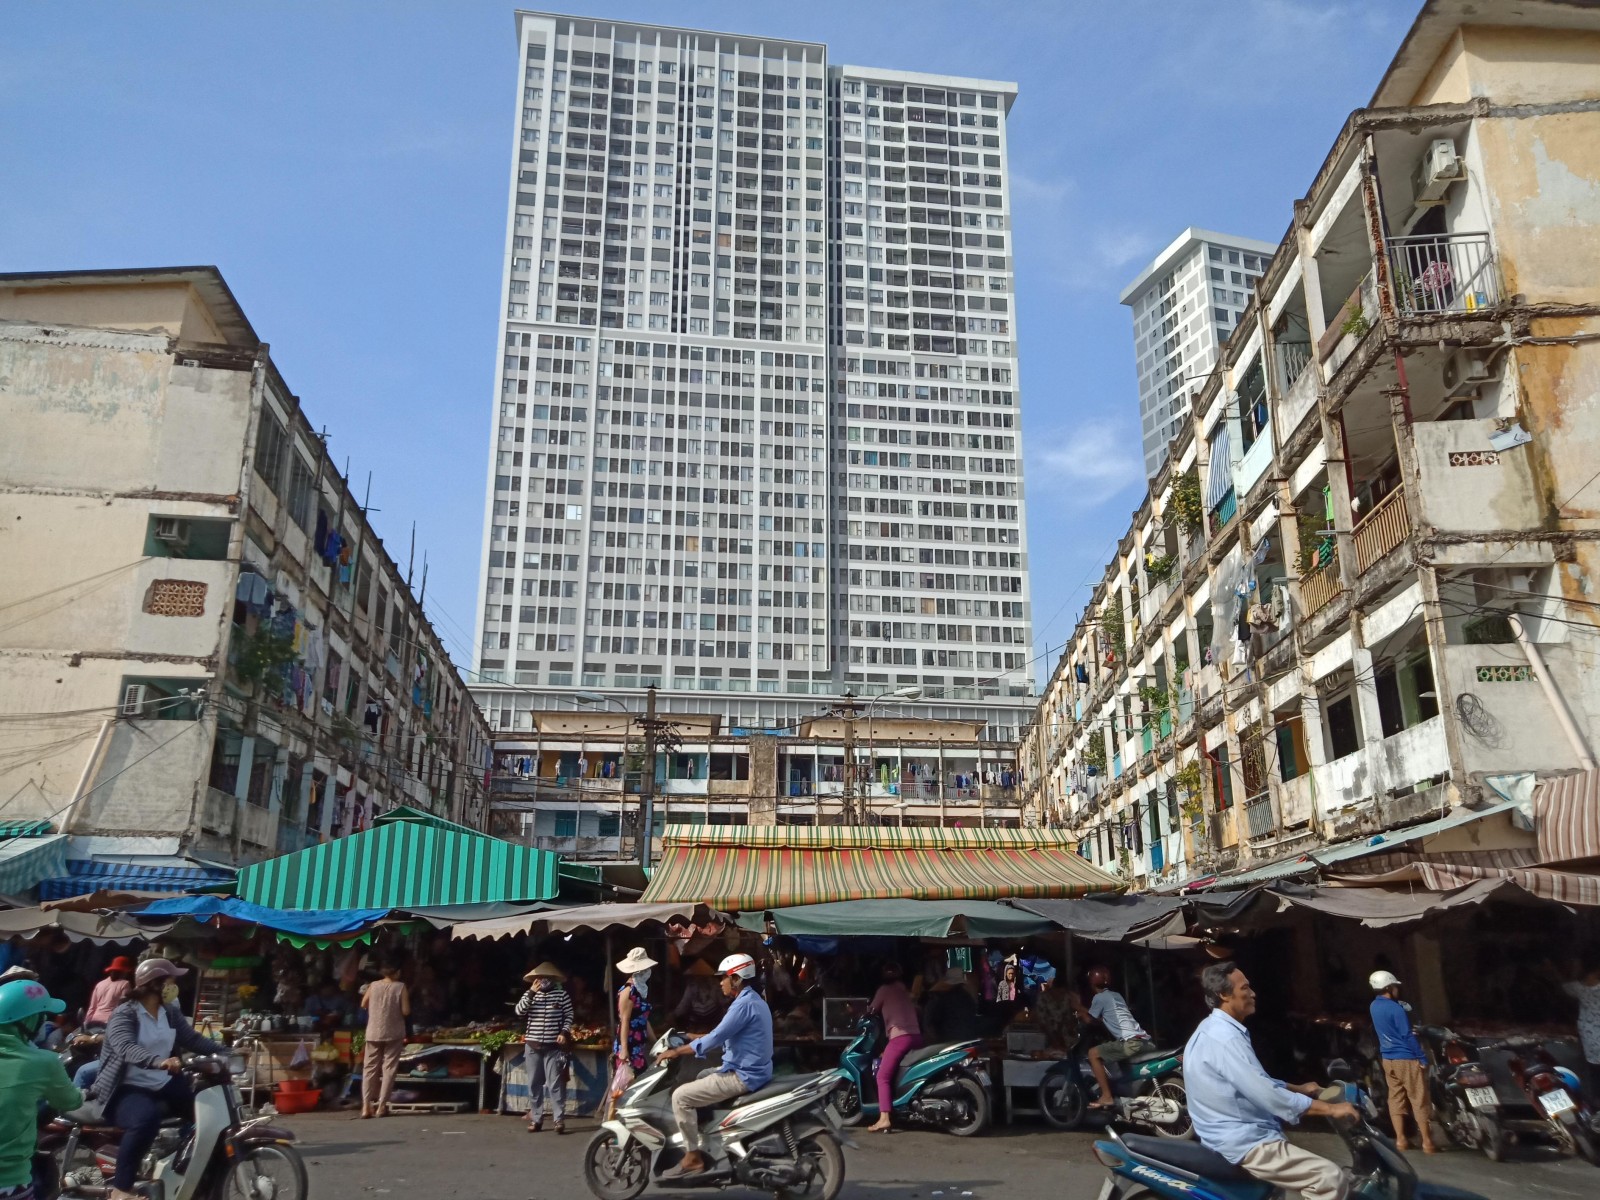 Chung cư sau nhiều năm trở nên nhếch nhác, bọc giữa chợ Nguyễn Hữu Hào đã tồn tại từ lâu. Xung quanh, nhiều chung cư cao tầng được xây dựng mới khang trang. Ảnh: Thu Thanh.